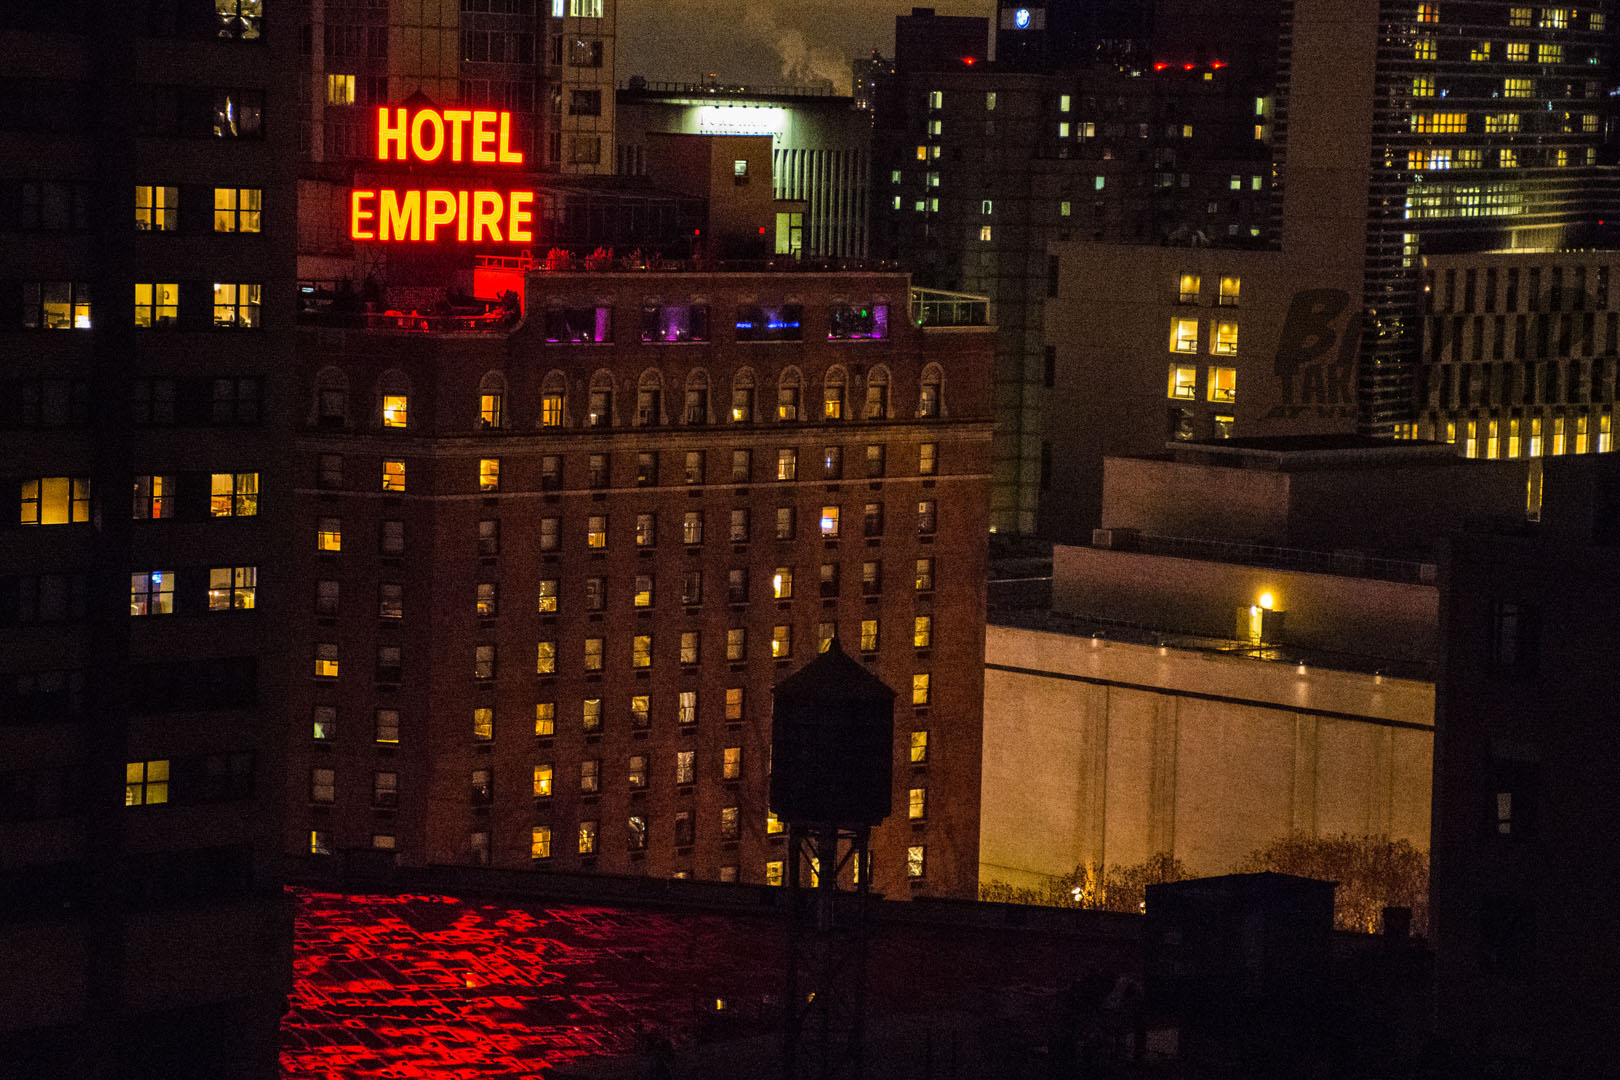 Hotel Empire_2015 (1 of 4).jpg